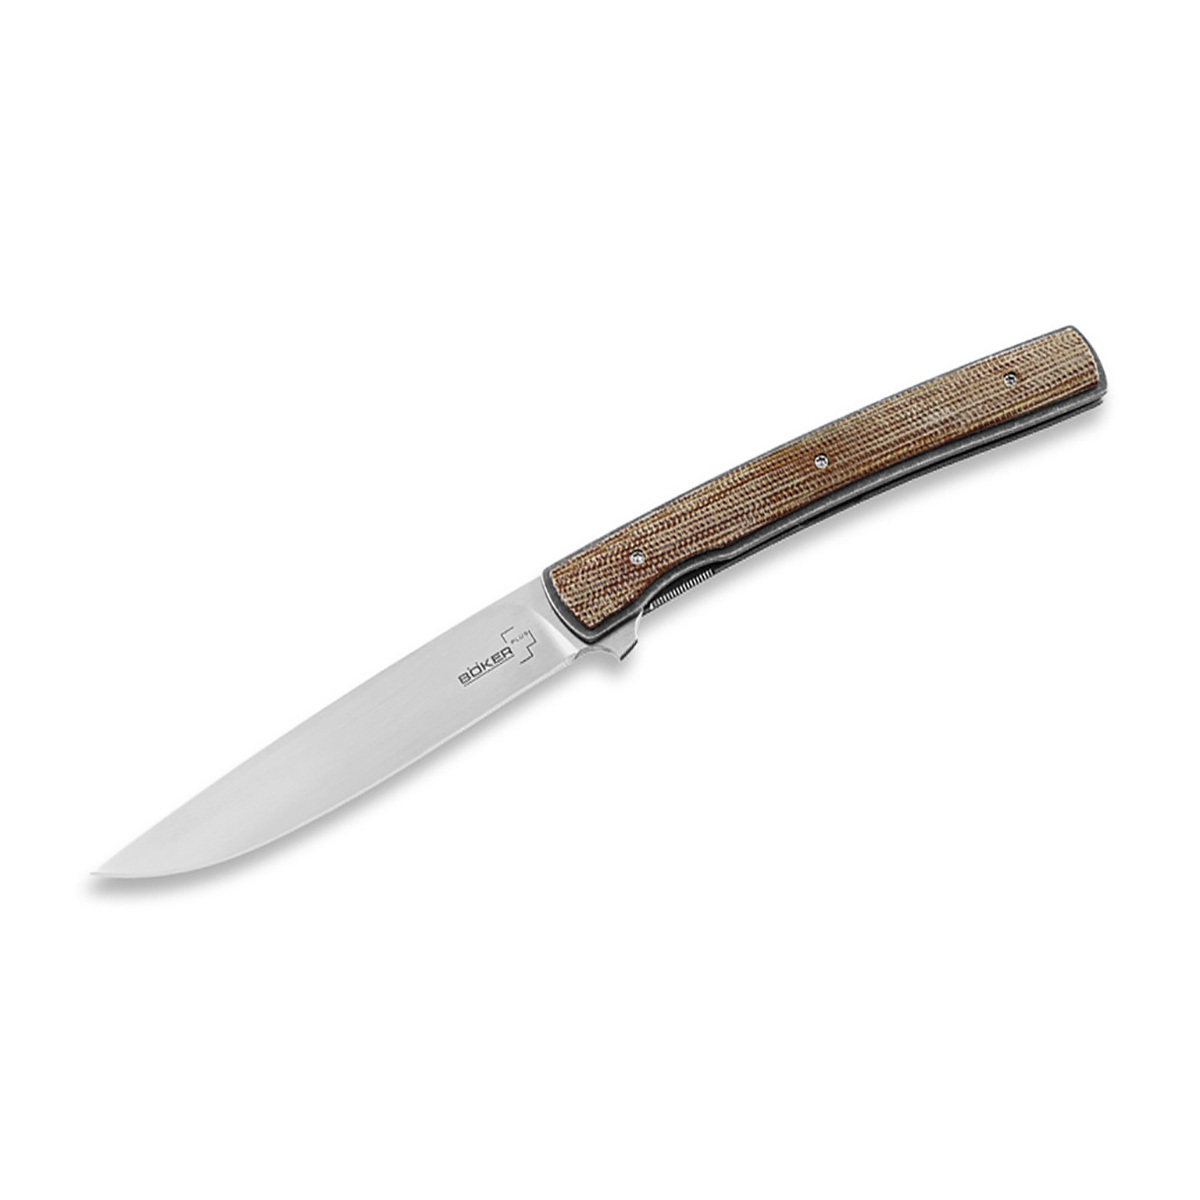 Складной нож Urban Trapper Gentleman Micarta, сталь VG-10, рукоять микарта